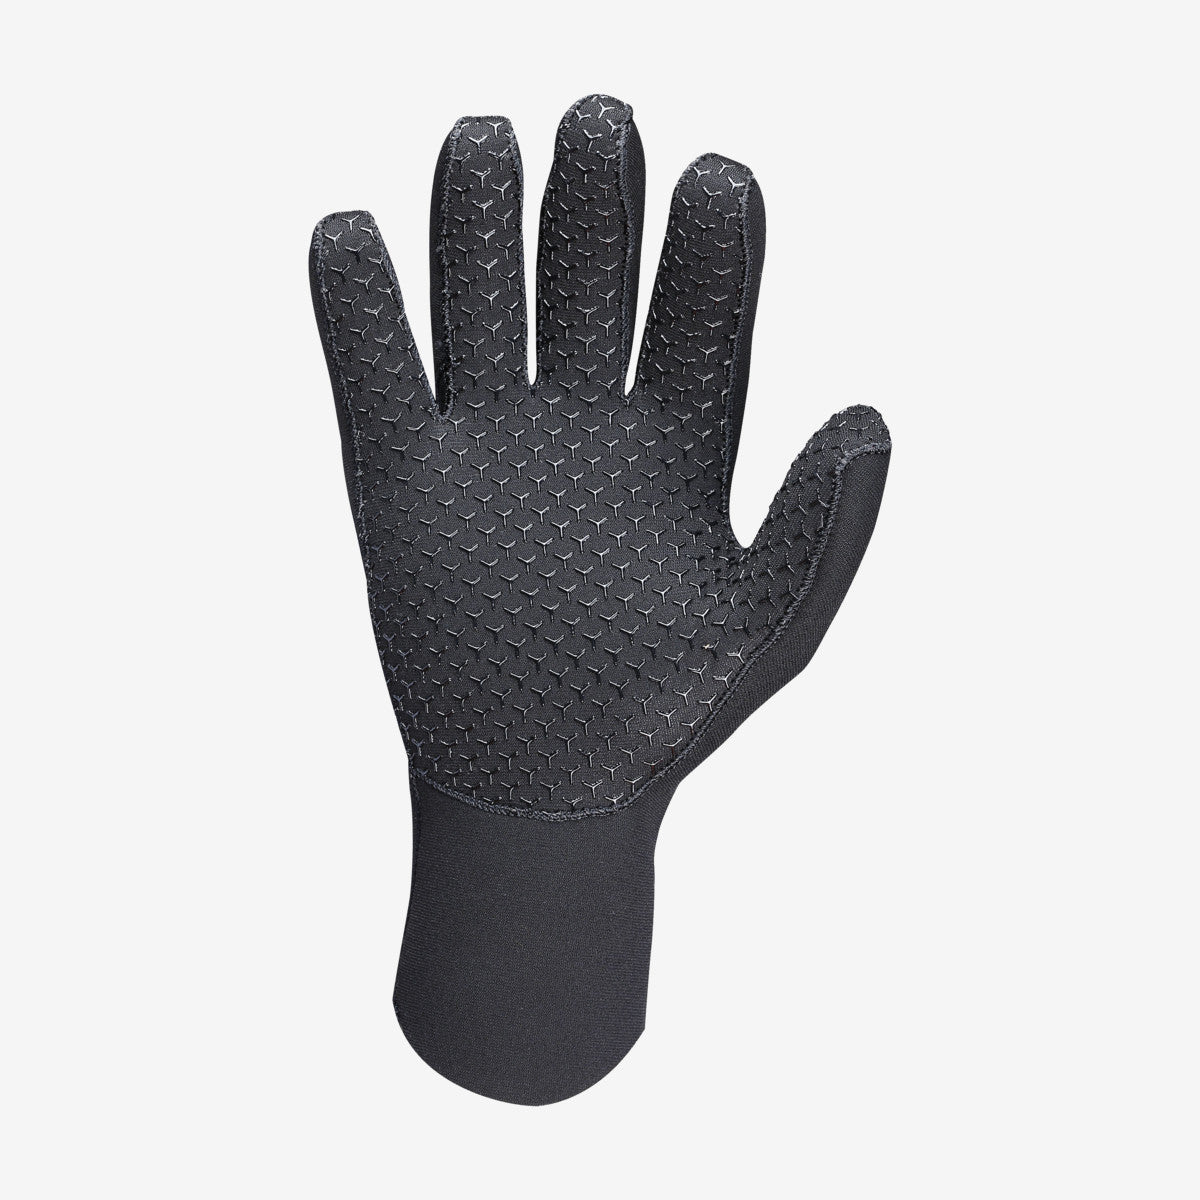 MARES Gloves Flexa classic 3mm כפפות צלילה בעובי 3 מ"מ